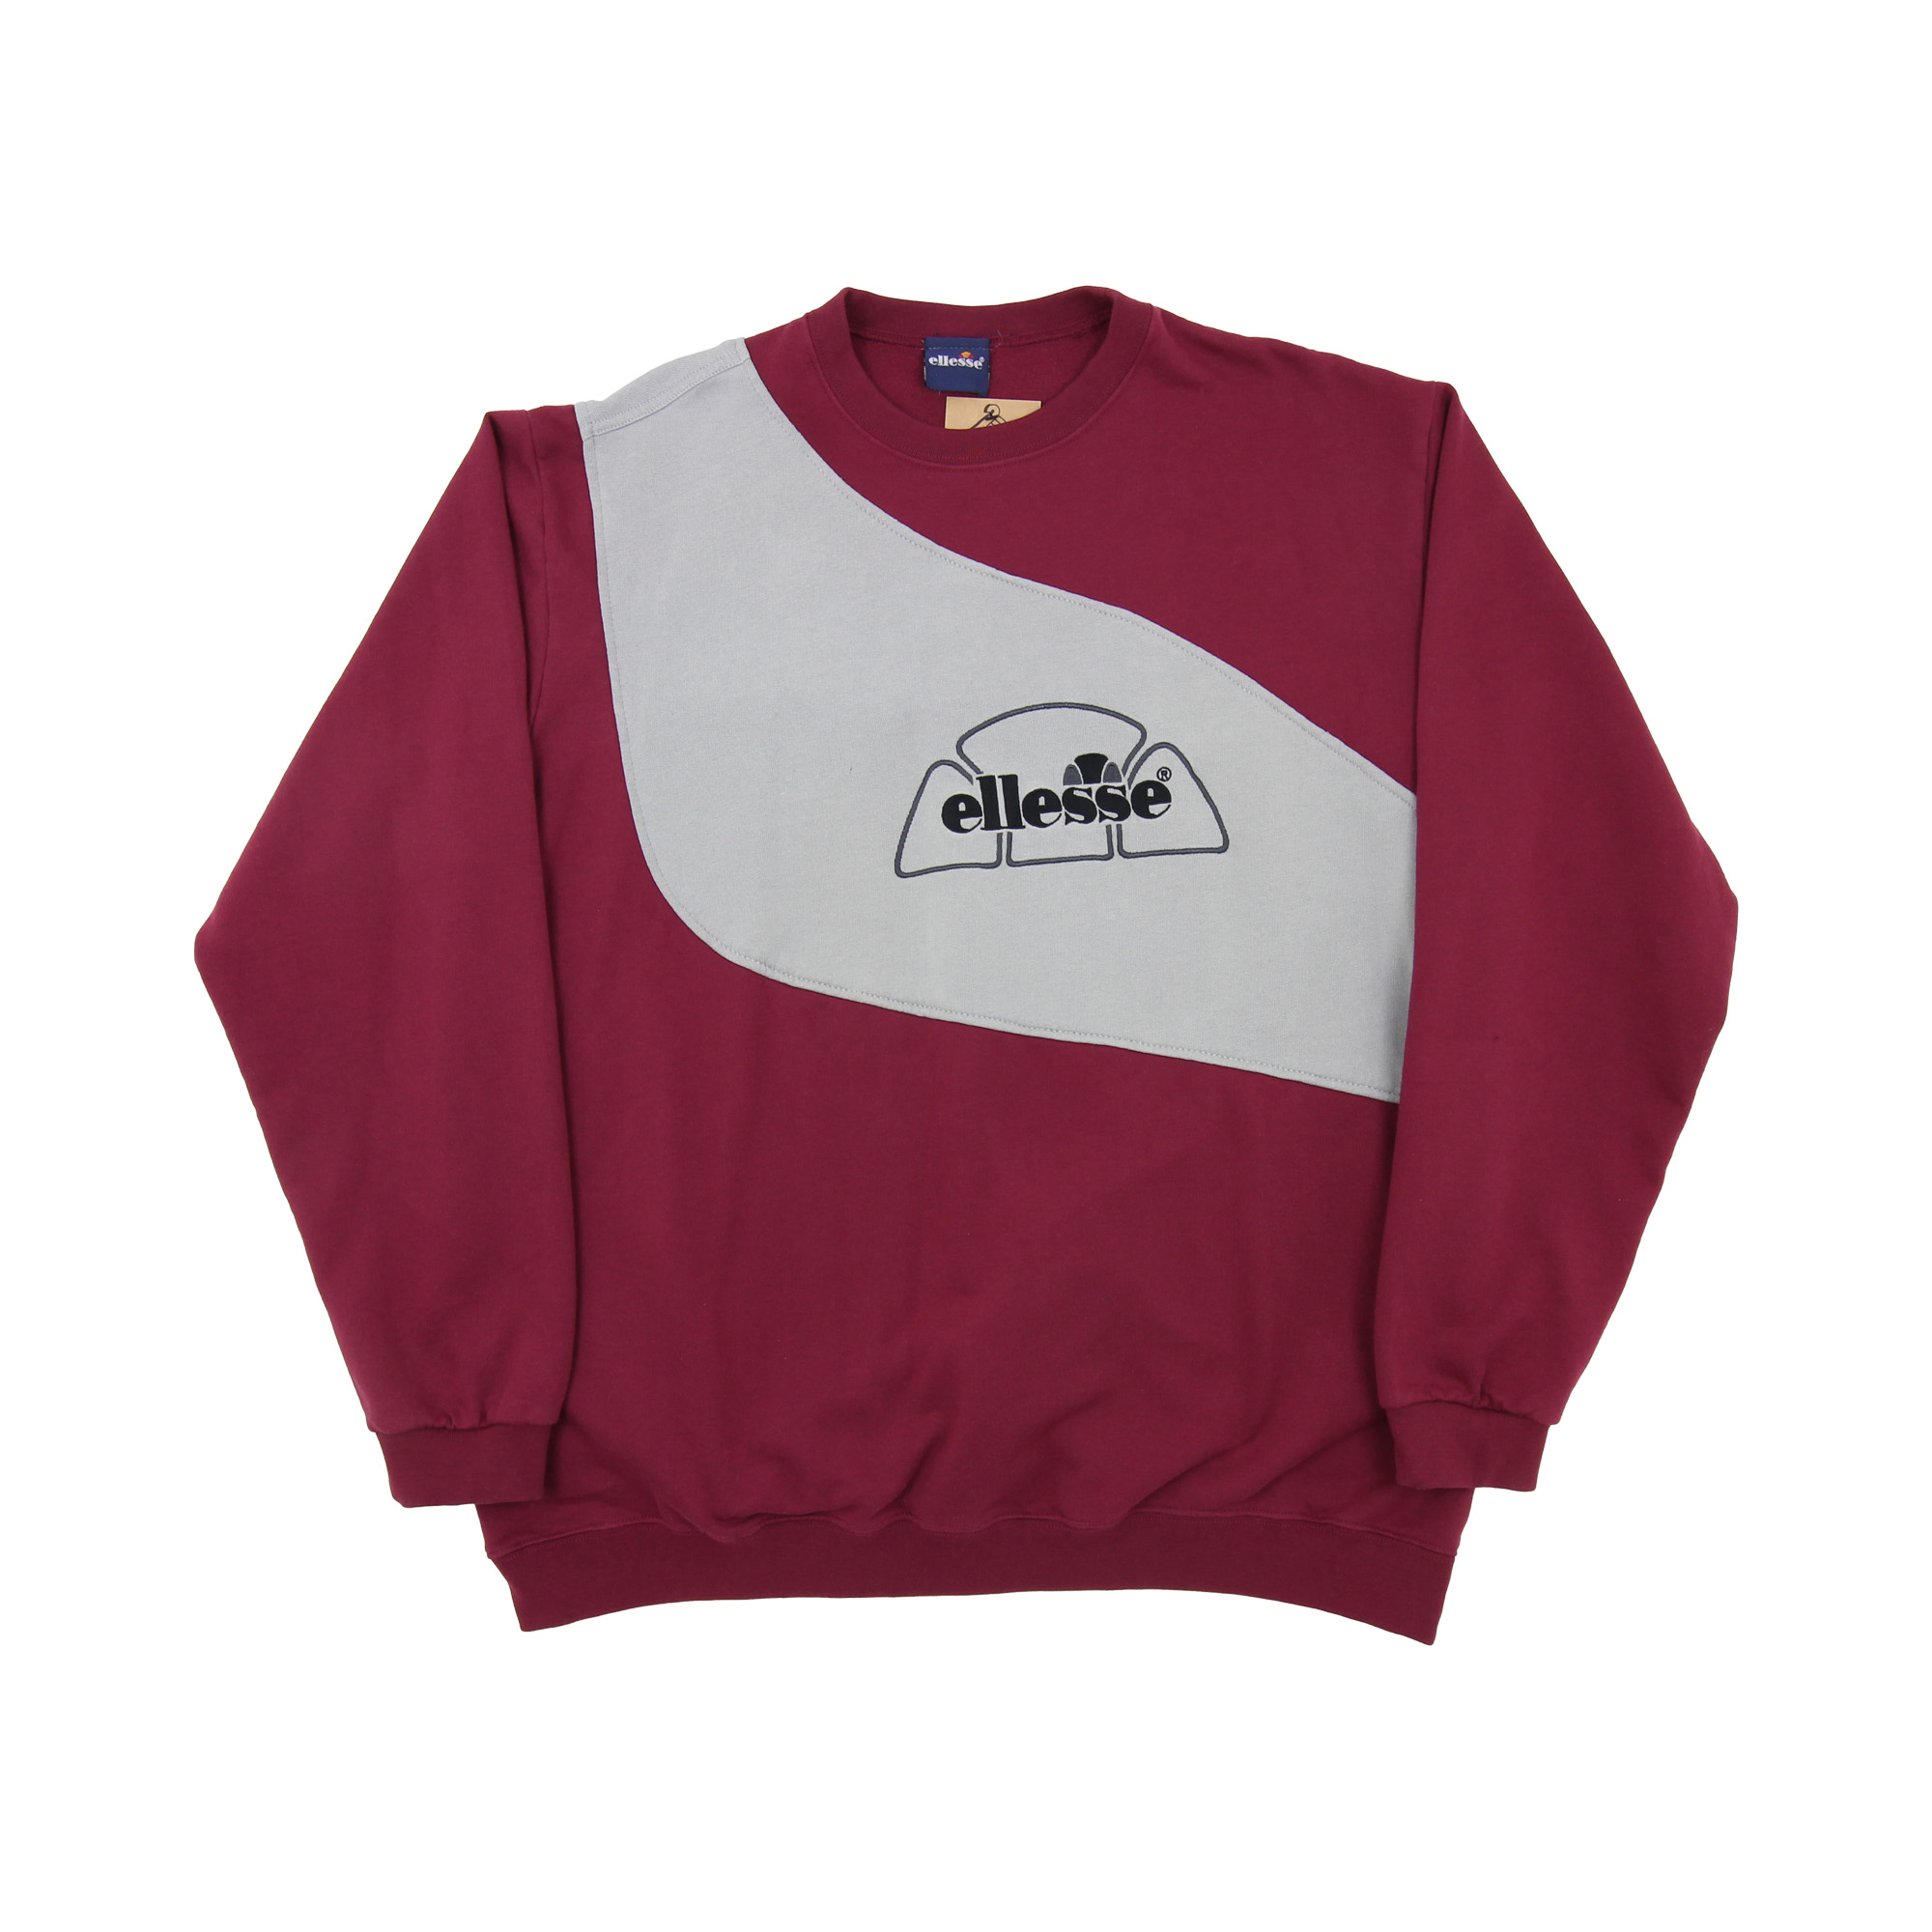 Ellesse Rework Sweatshirt -  XL